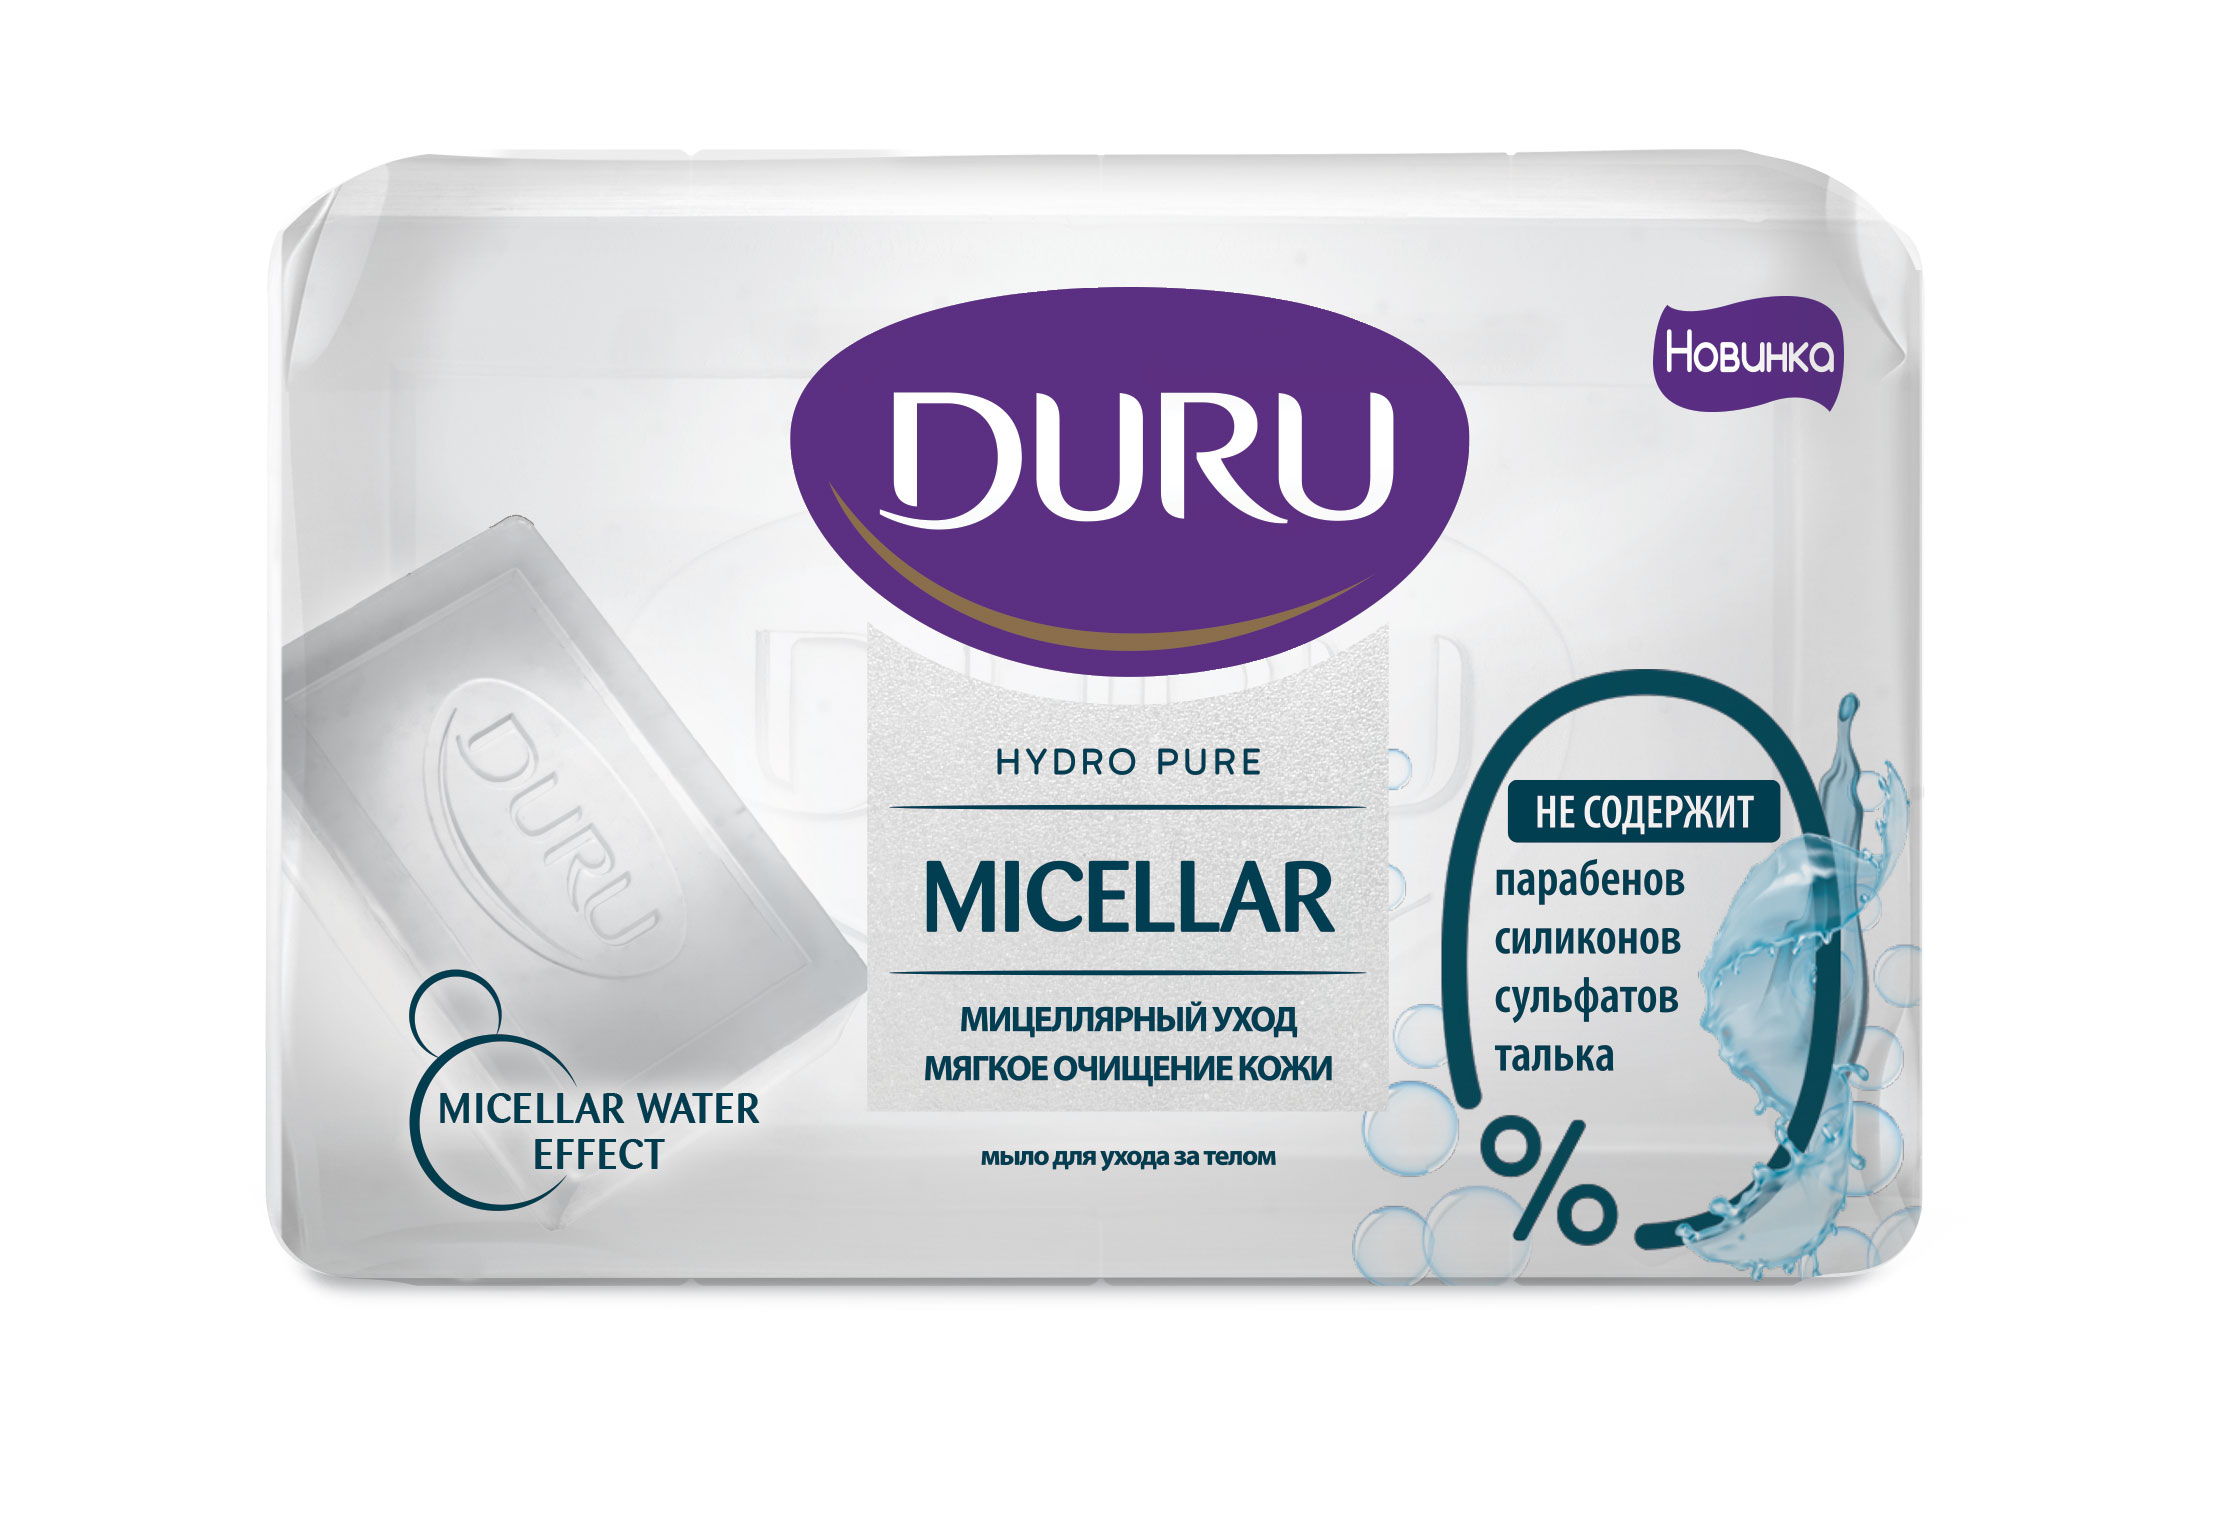 Мыло мицеллярное Duru, HYDRO PURE,  110 г мыло спа уход для бани и сауны с новым годом брусника банная забава 80 гр